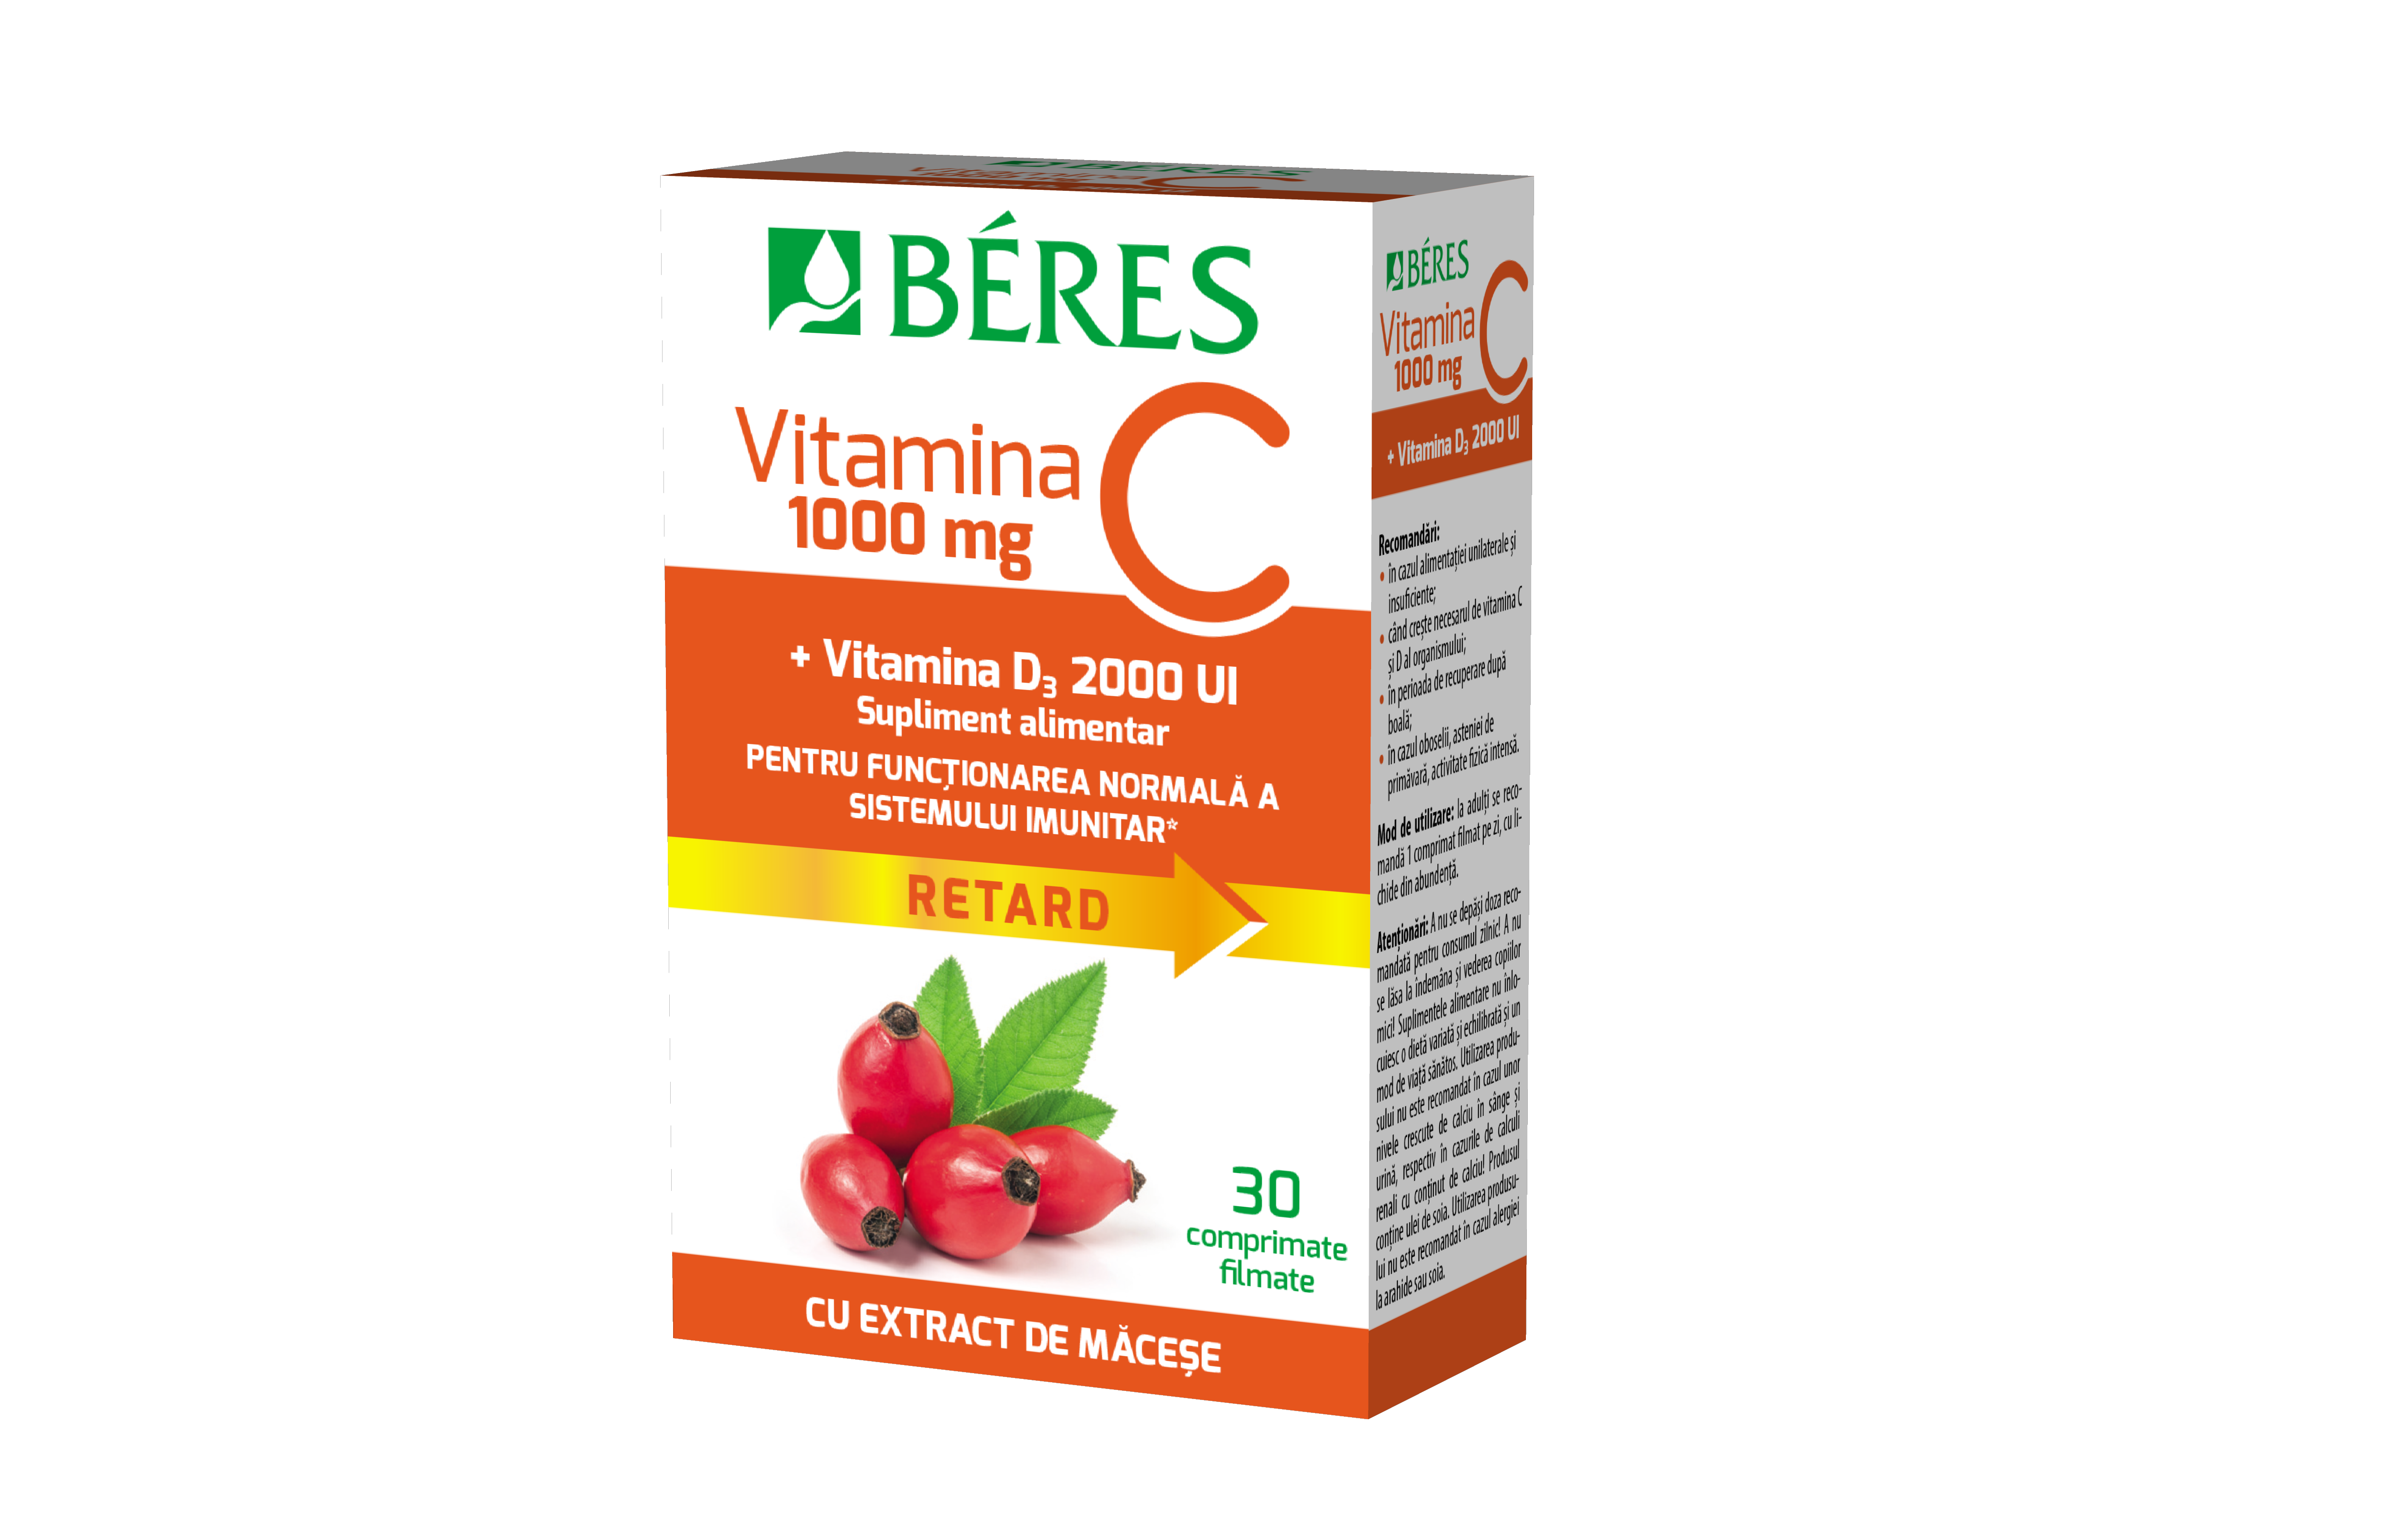 Vitamina C 1000 mg plus Vitamina D3 2000UI, 30 comprimate, Beres Pharmaceuticals Co